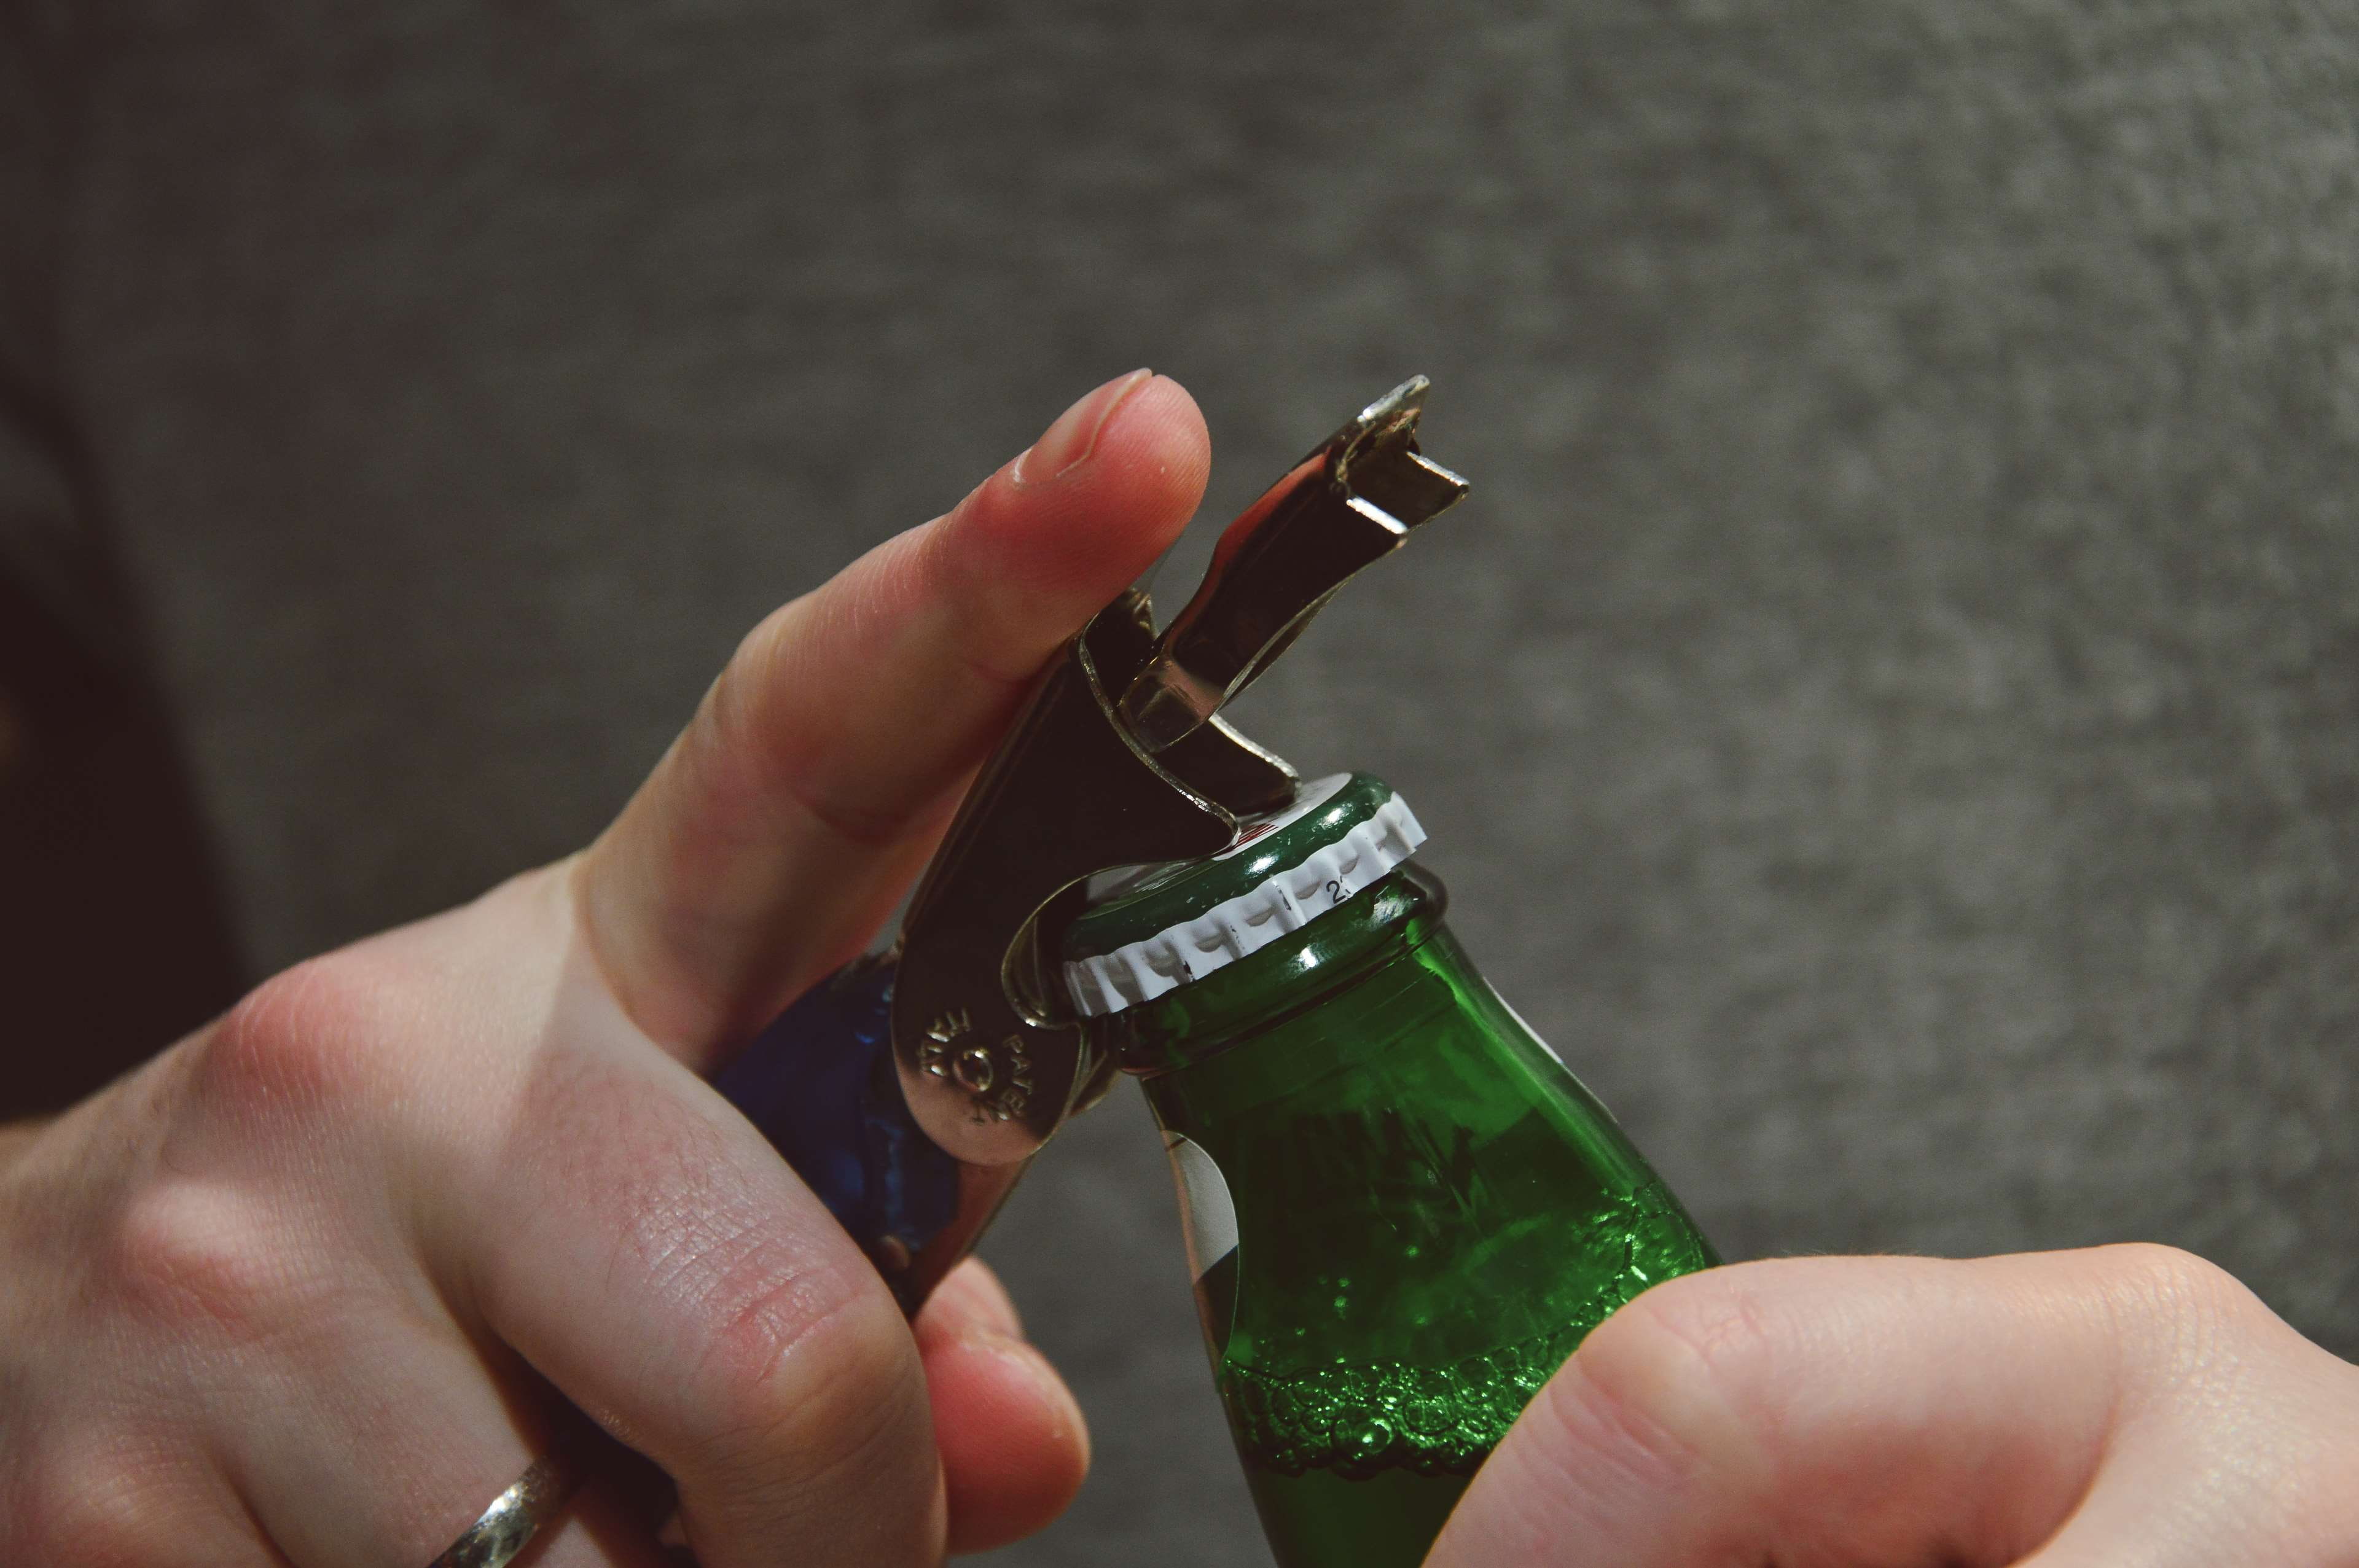 beer, beverage, bottle cap, bottle opener, drink, hands, man